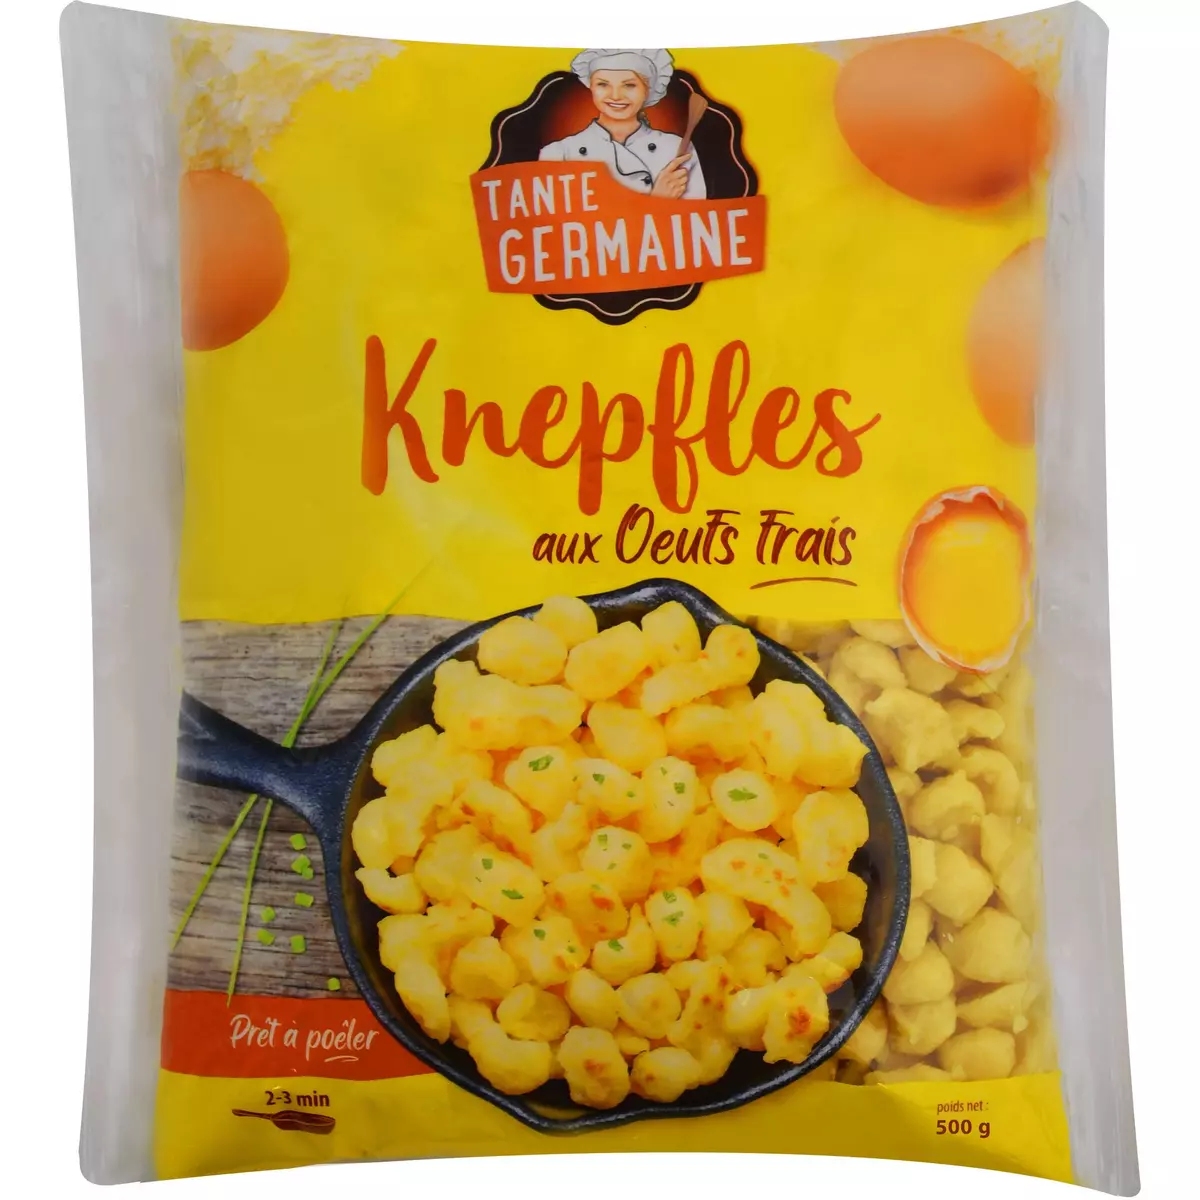 TANTE GERMAINE Knepfles aux oeufs frais 500g